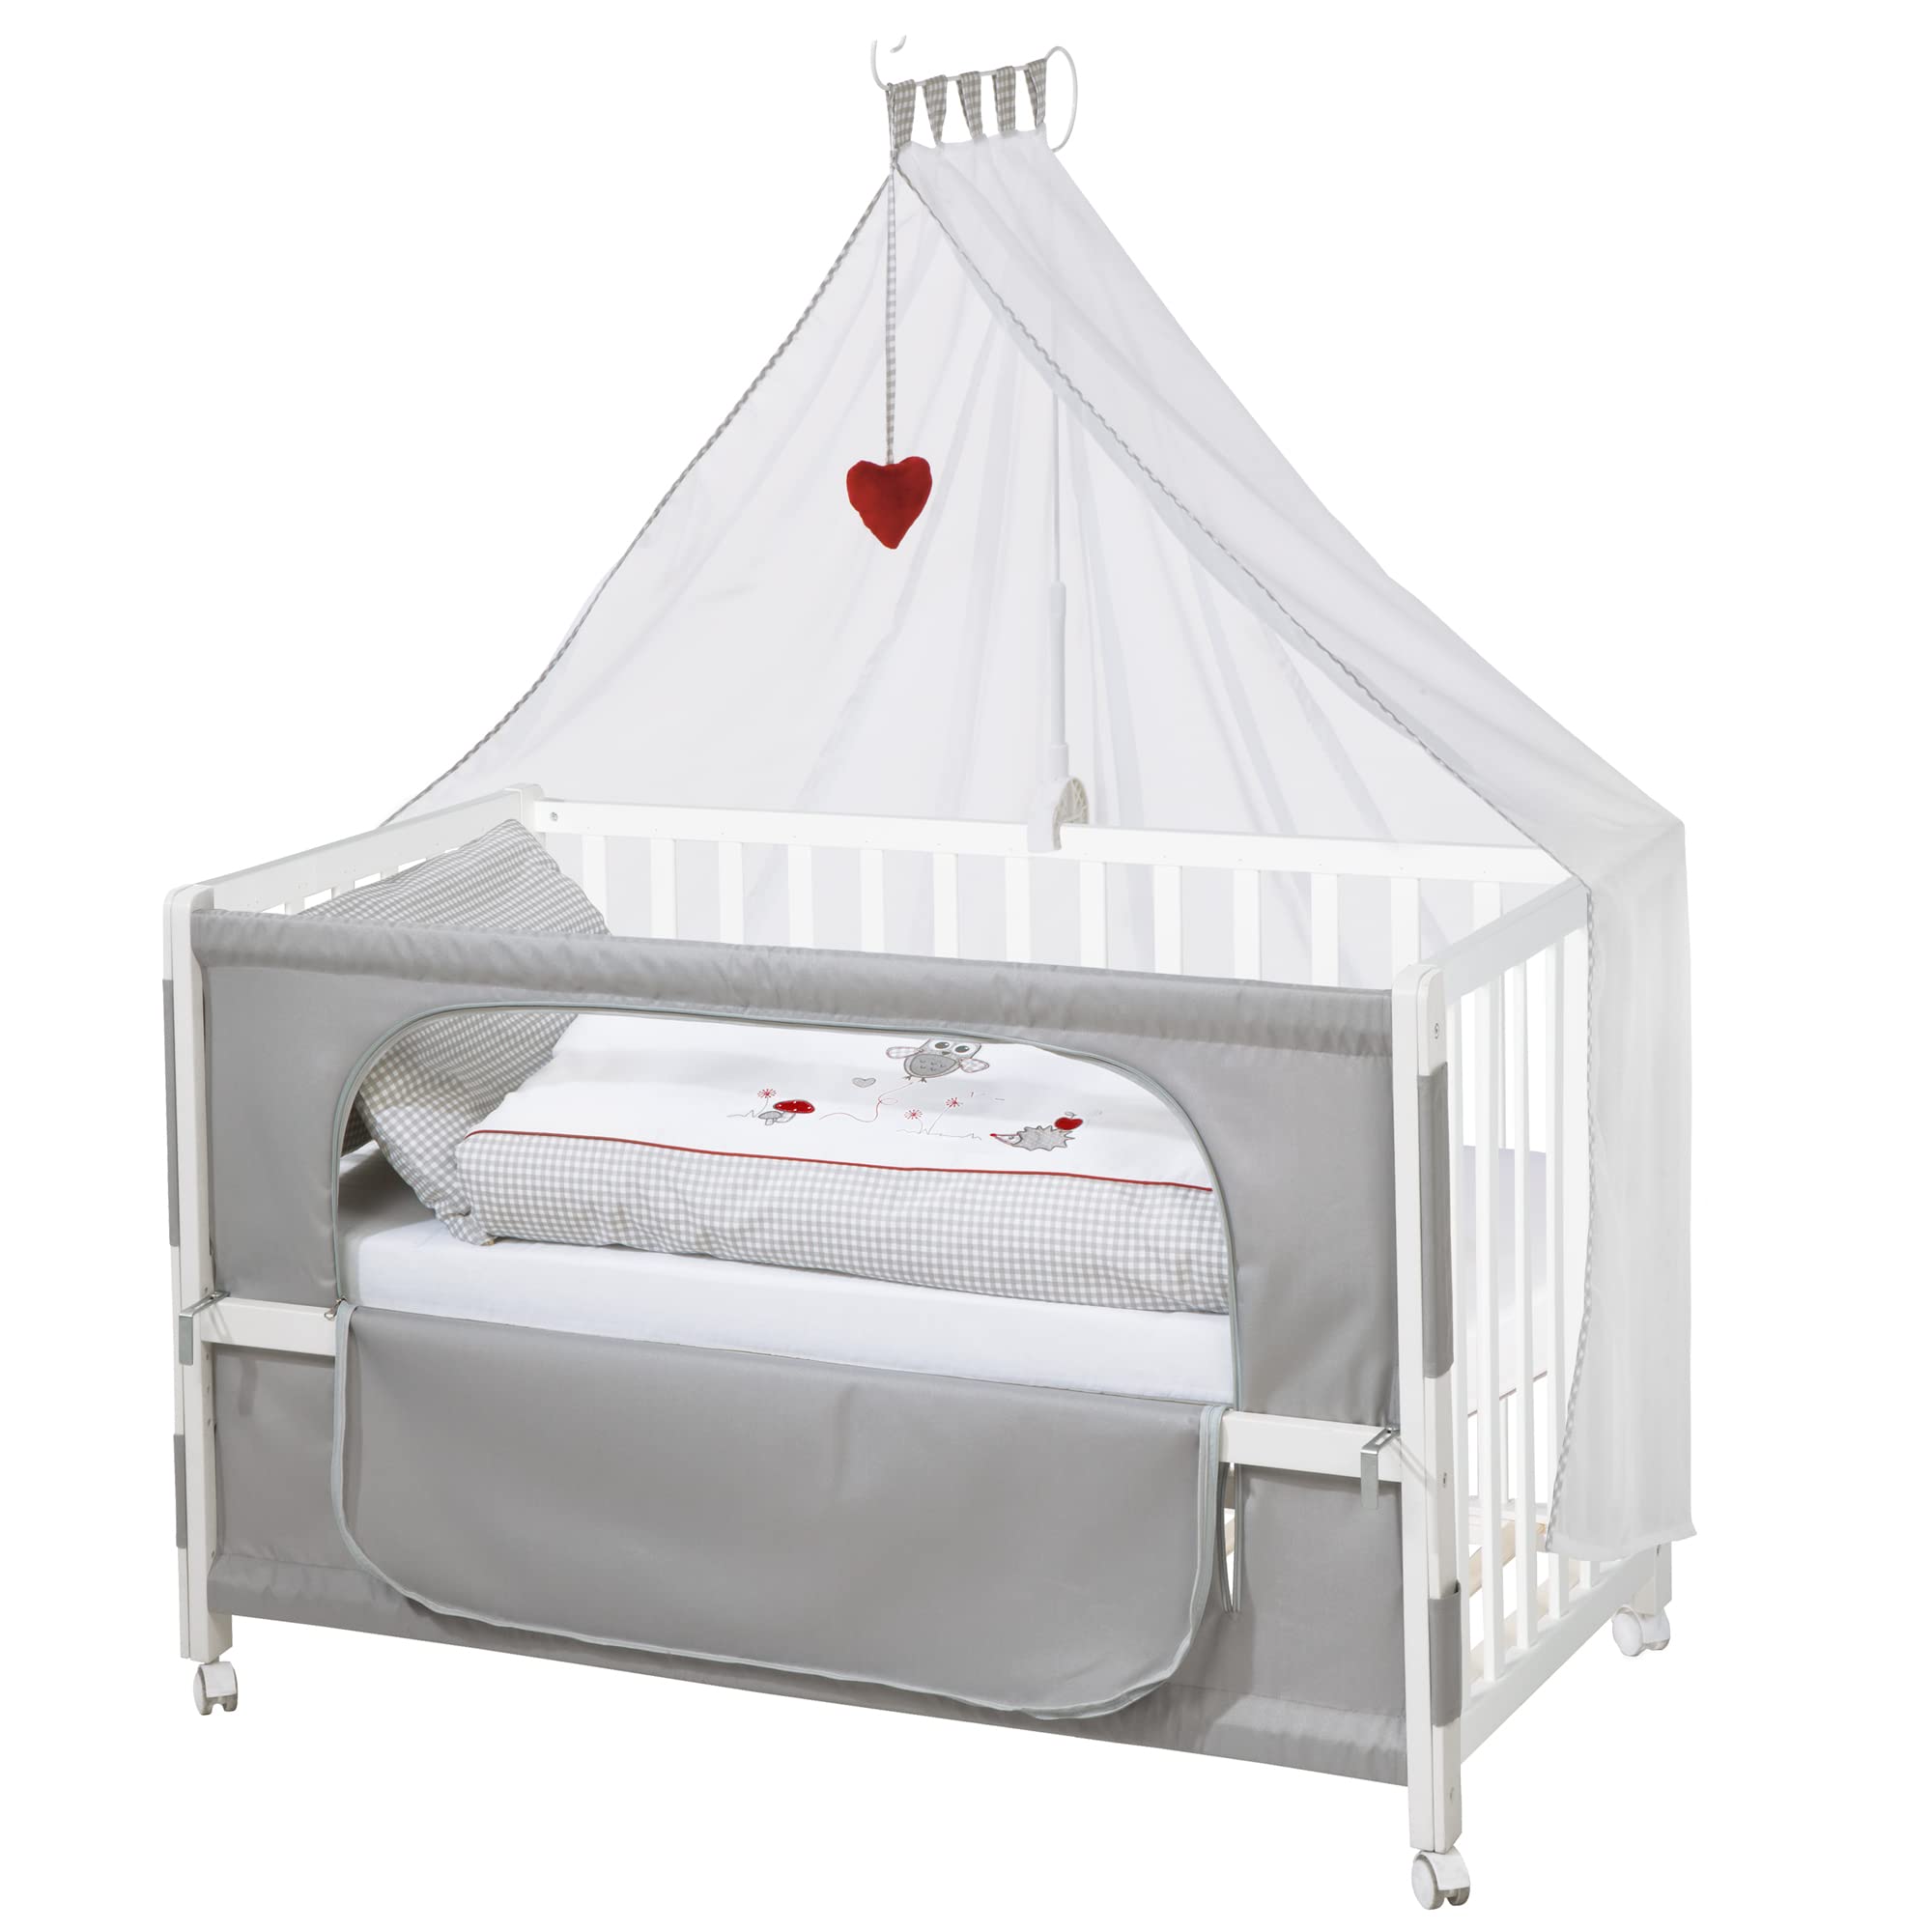 roba Beistellbett 60 x 120 cm - Adam & Eule Room Bed - Babybett zum Anstellen an Elternbett - Inklusive Matratze, Bettwäsche, Himmel - Mobil & Höhenverstellbar - Holz weiß